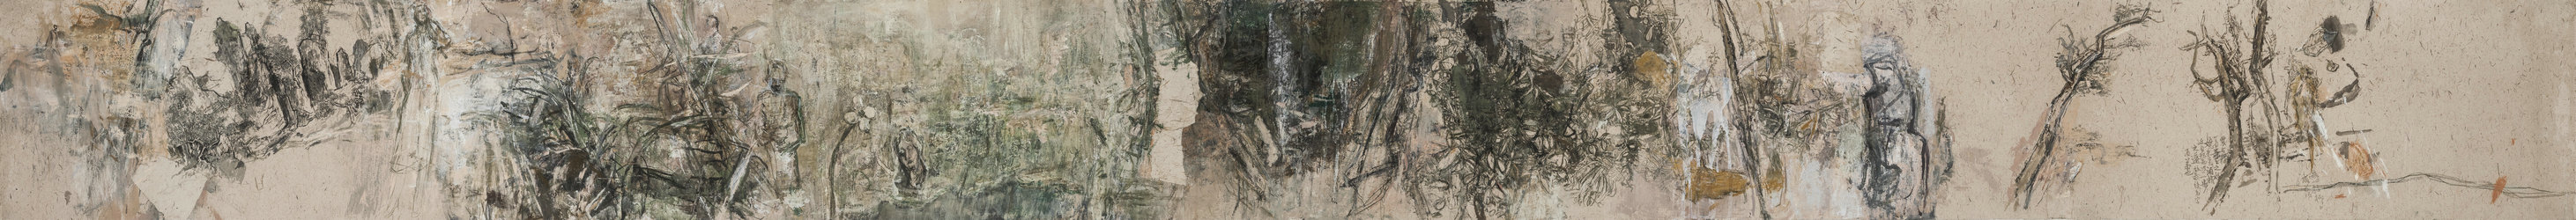 1 敞开的峡谷博物馆 2014 纸本 38X428cm